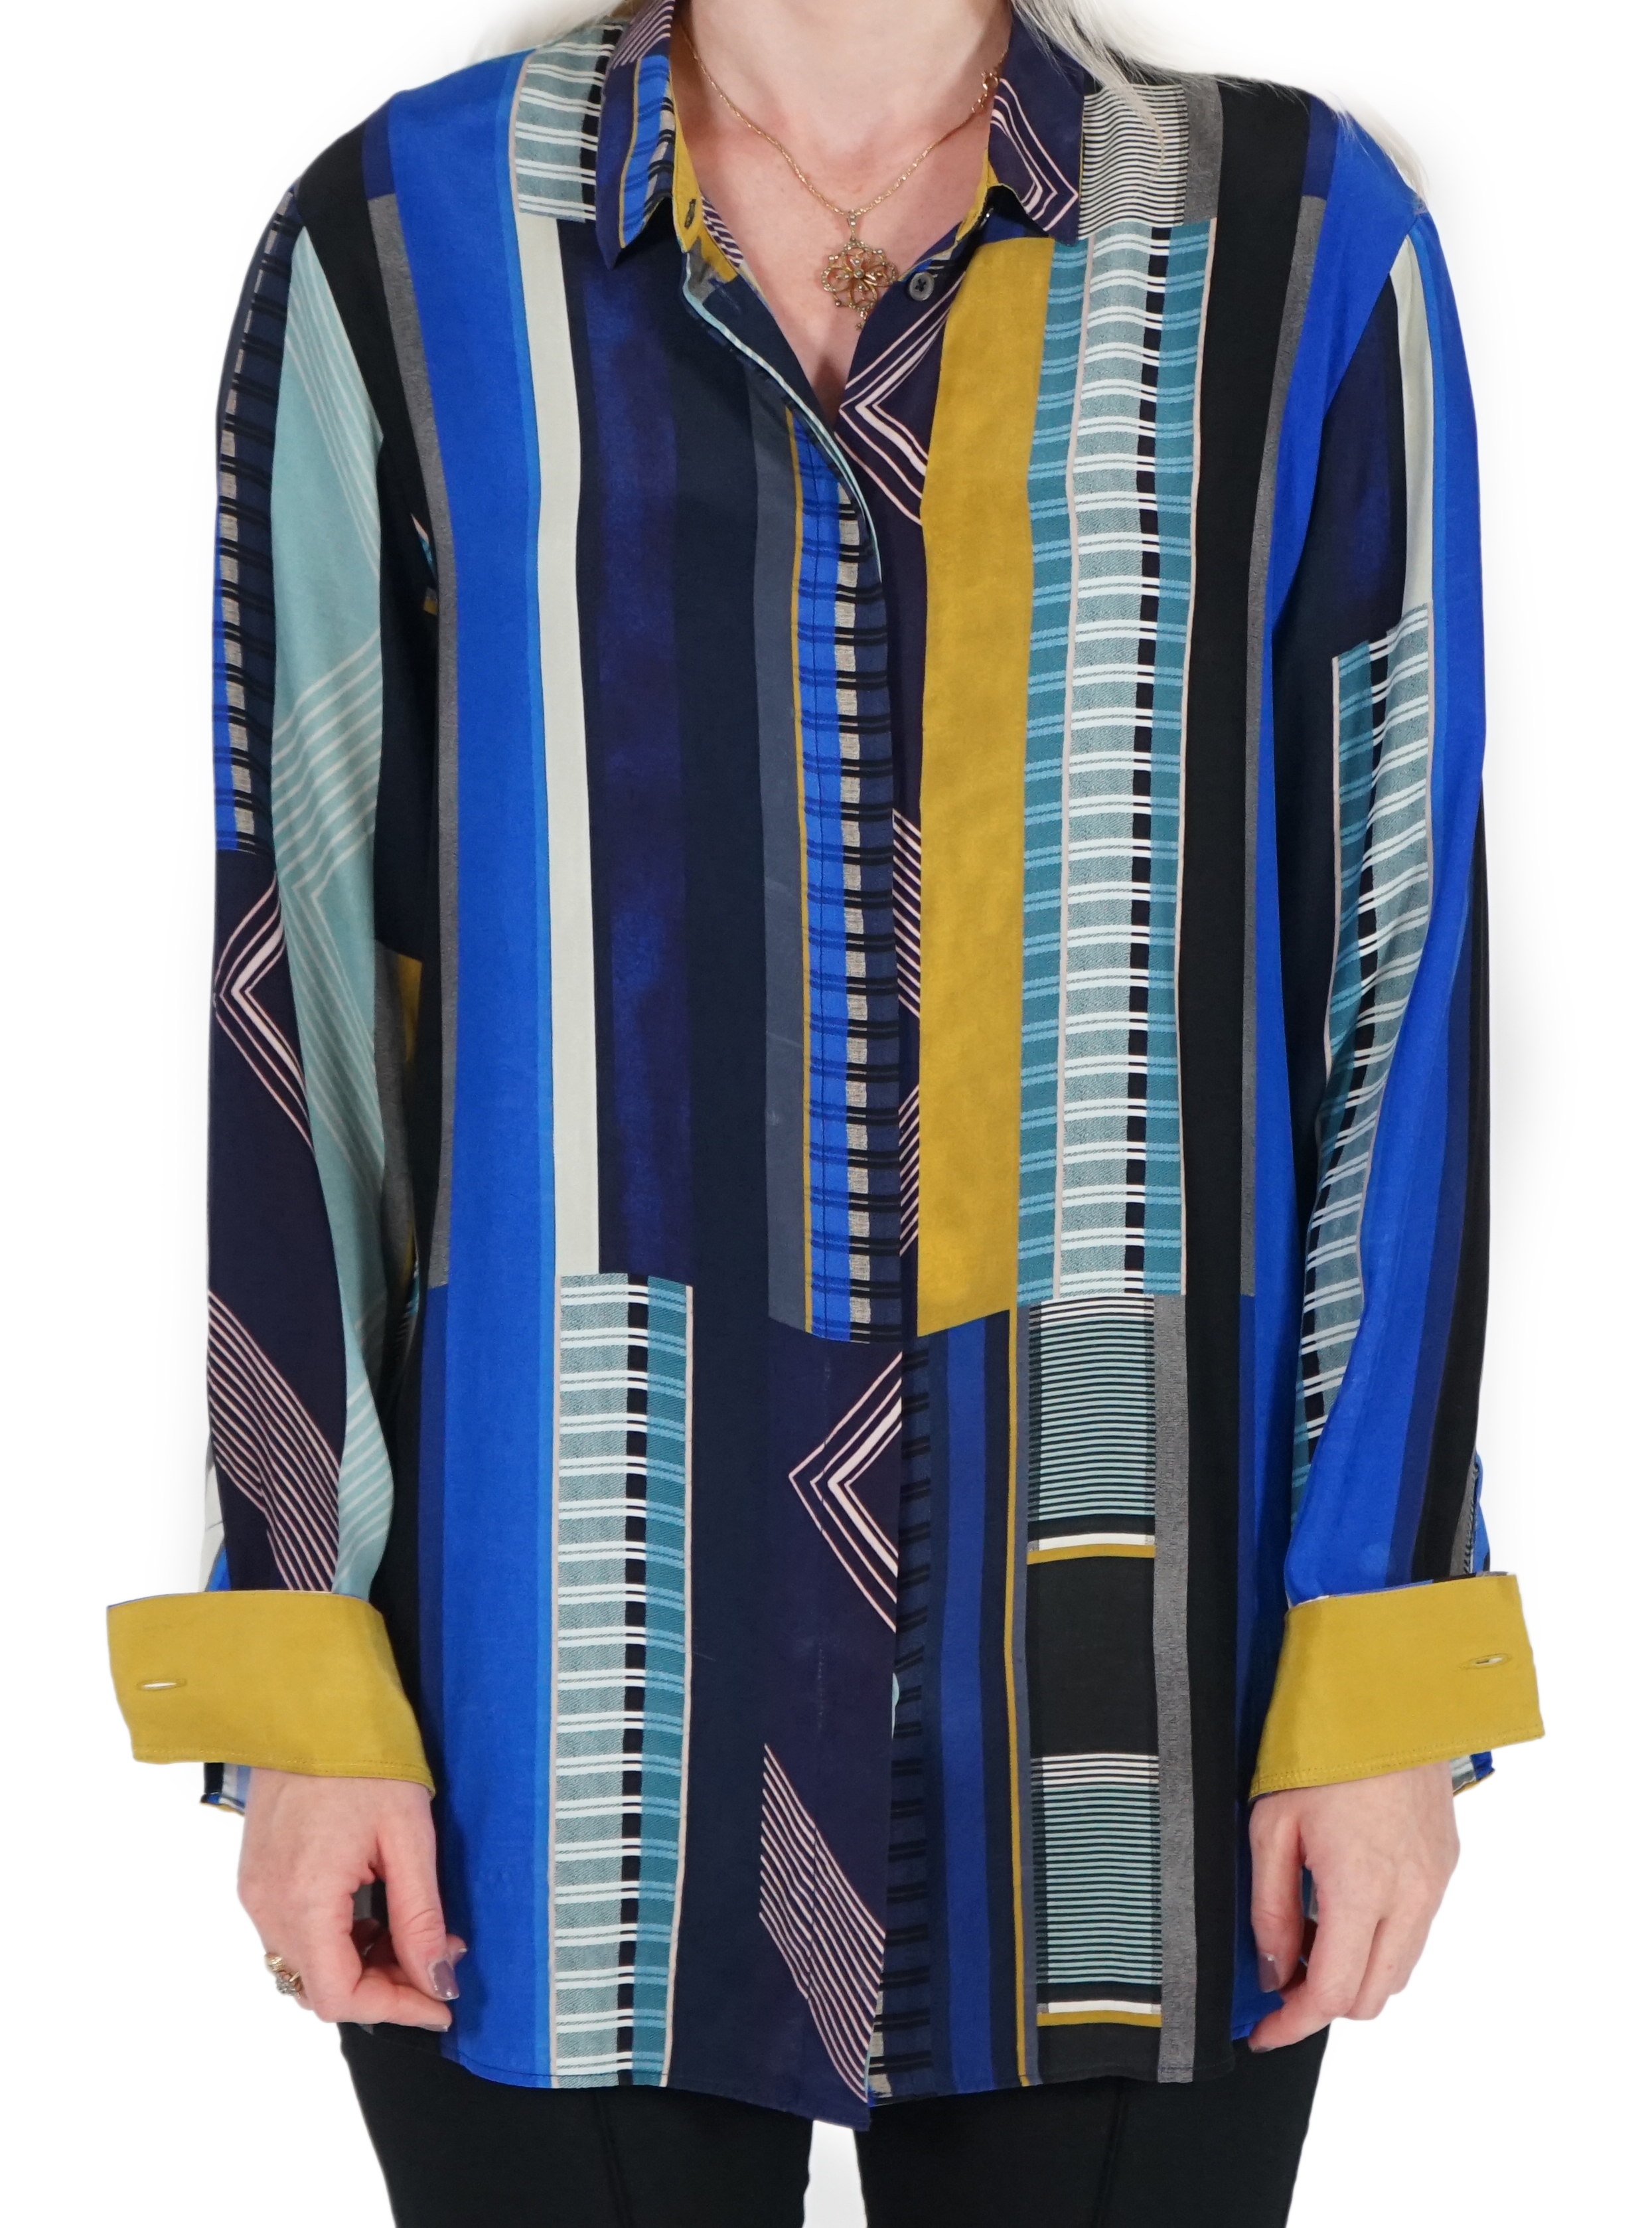 A Paul Smith silk blouse, Size 44